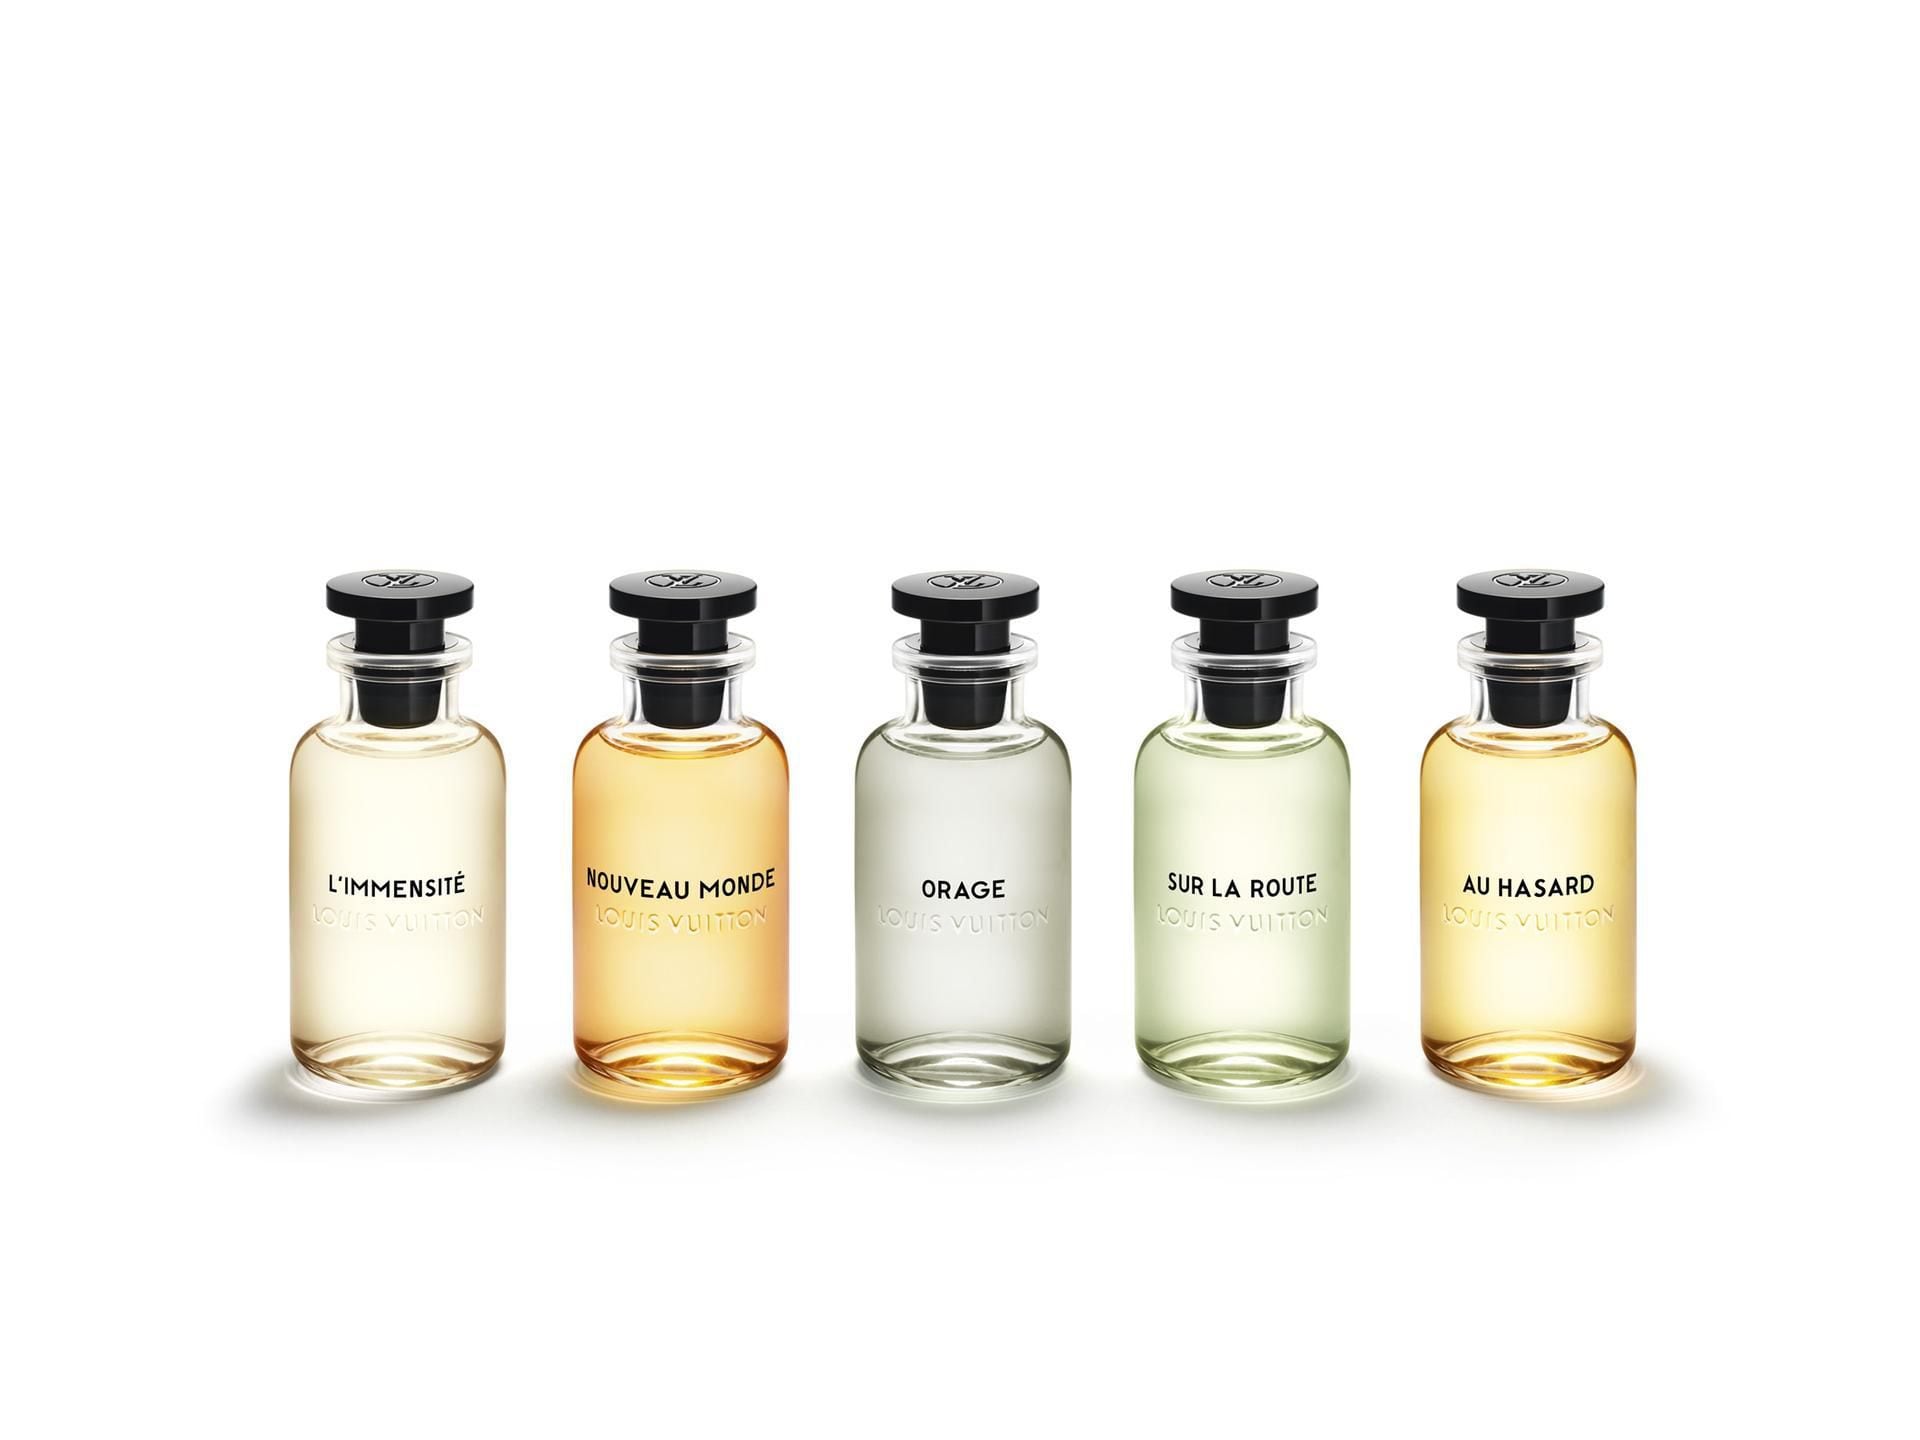 Louis Vuitton's Jacques Cavallier Belletrud: a poet of perfume